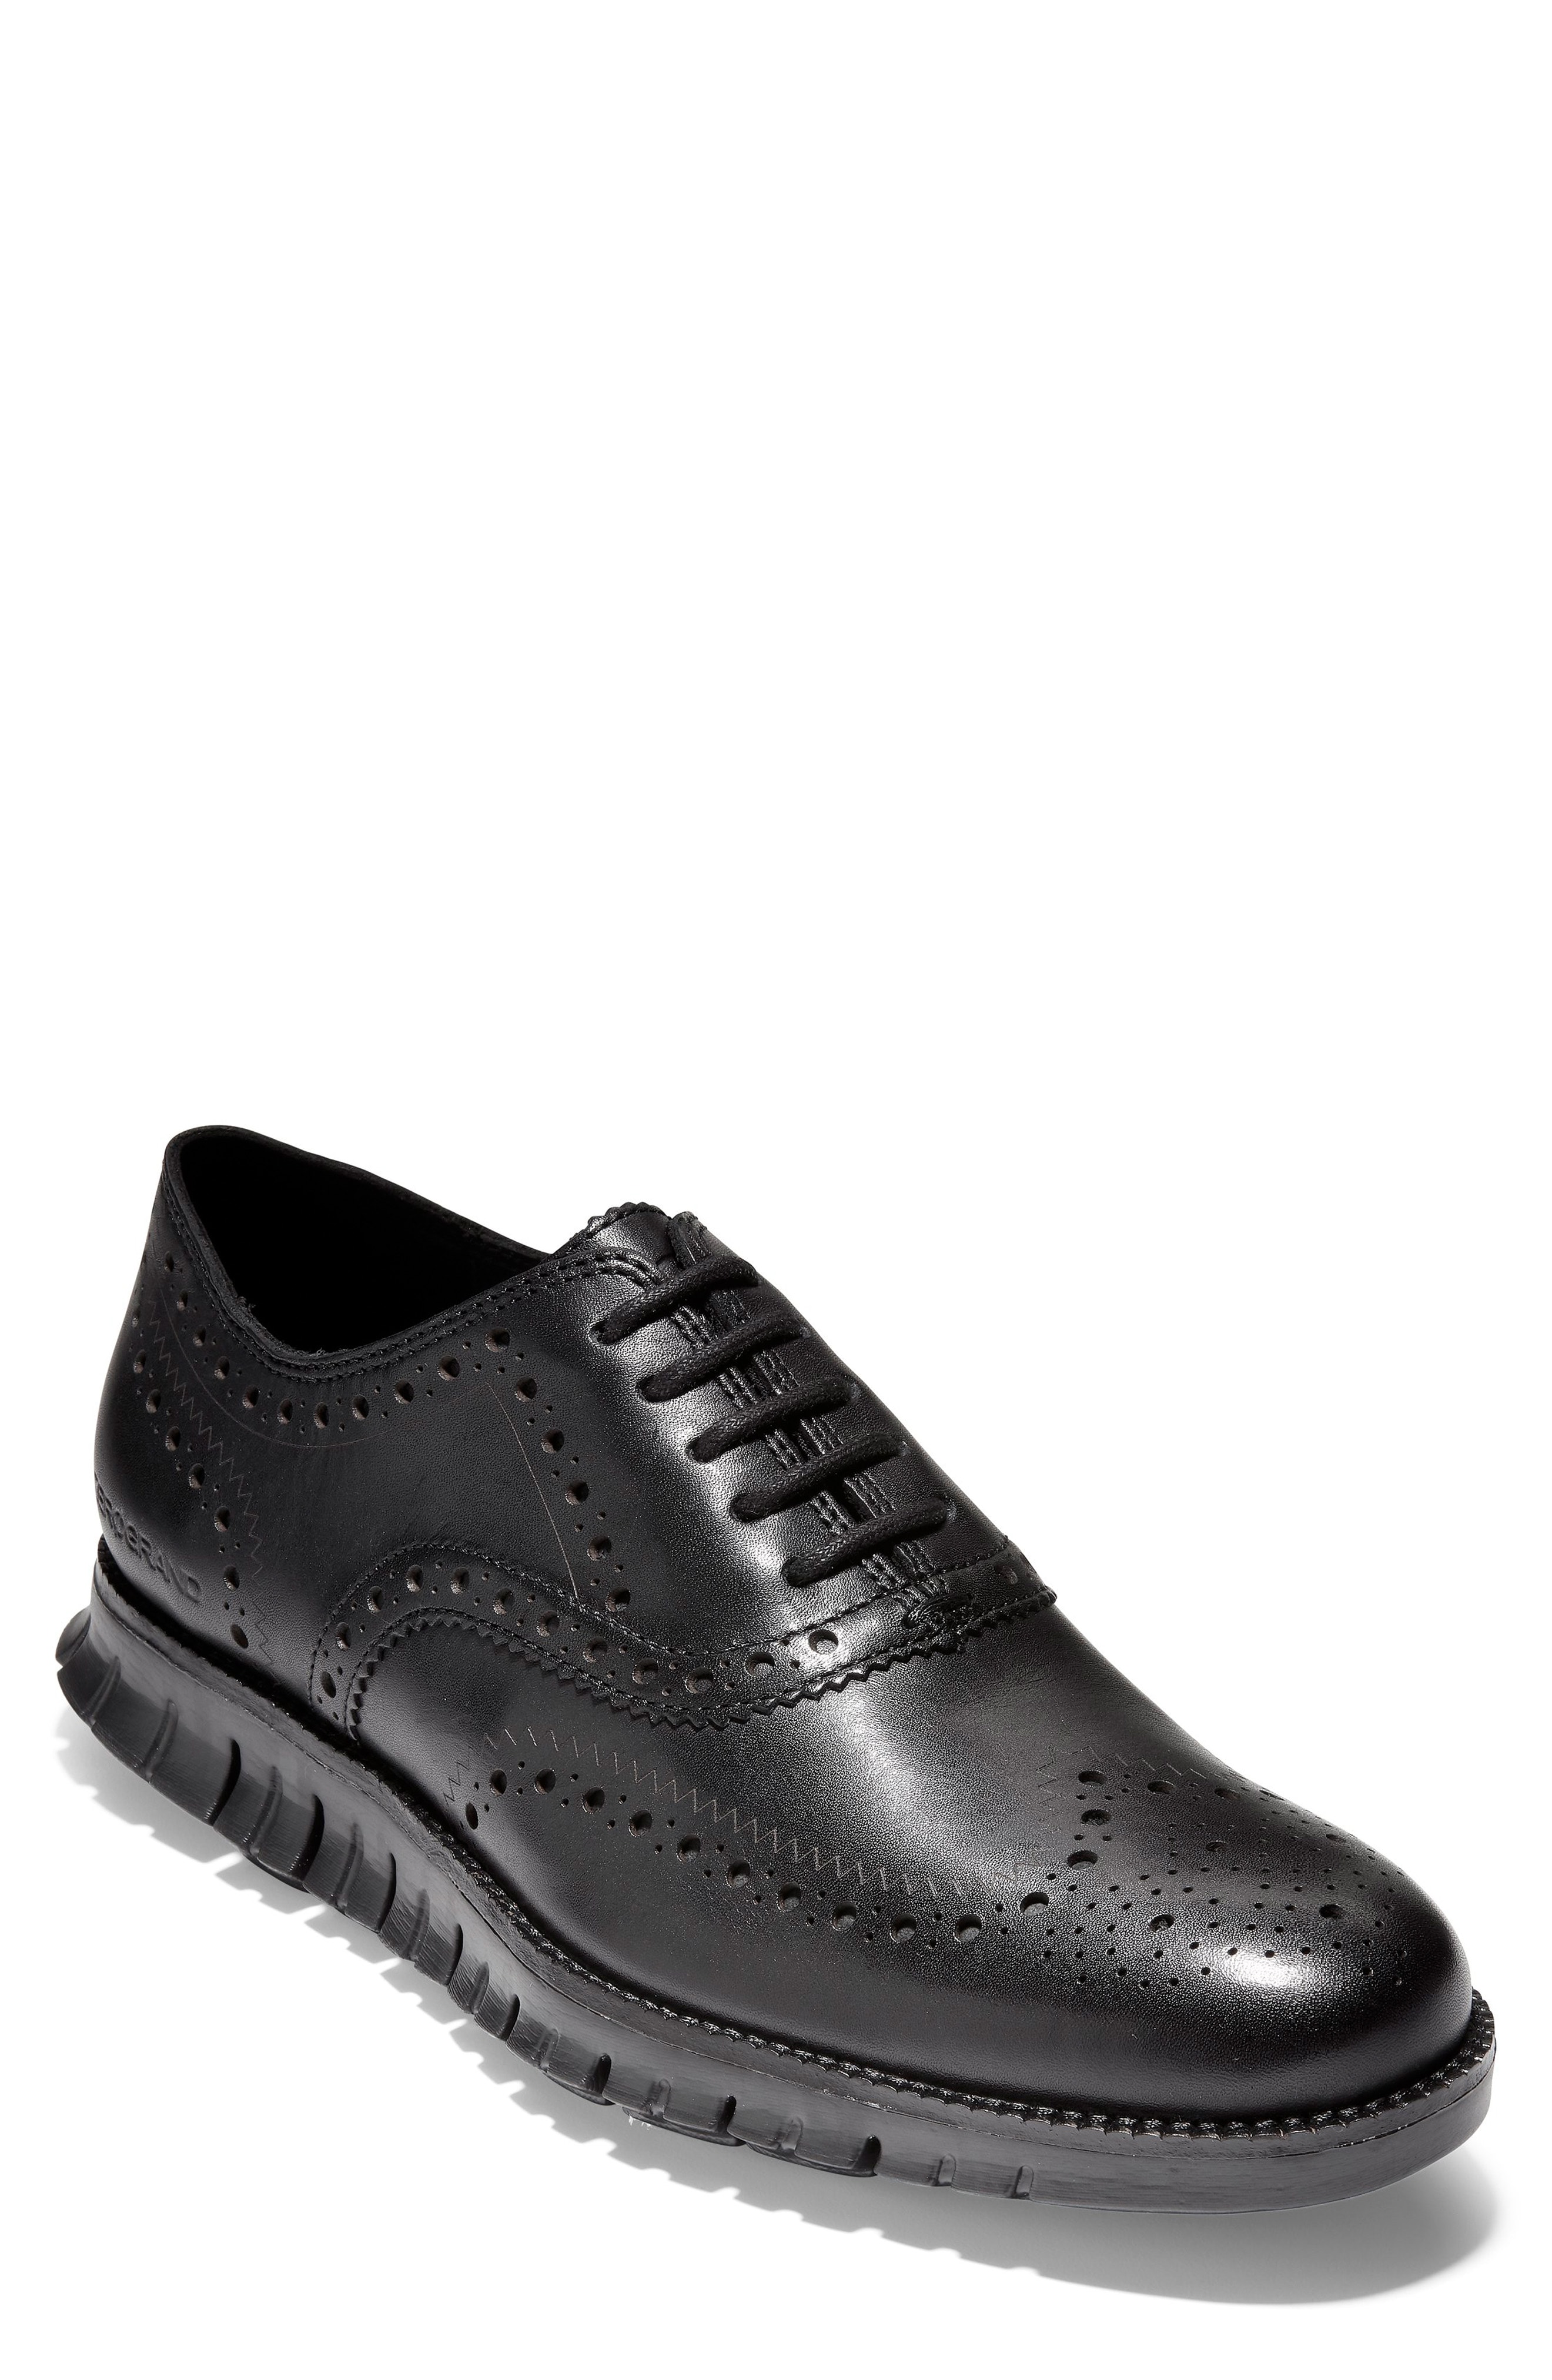 Men's Black Shoes | Nordstrom